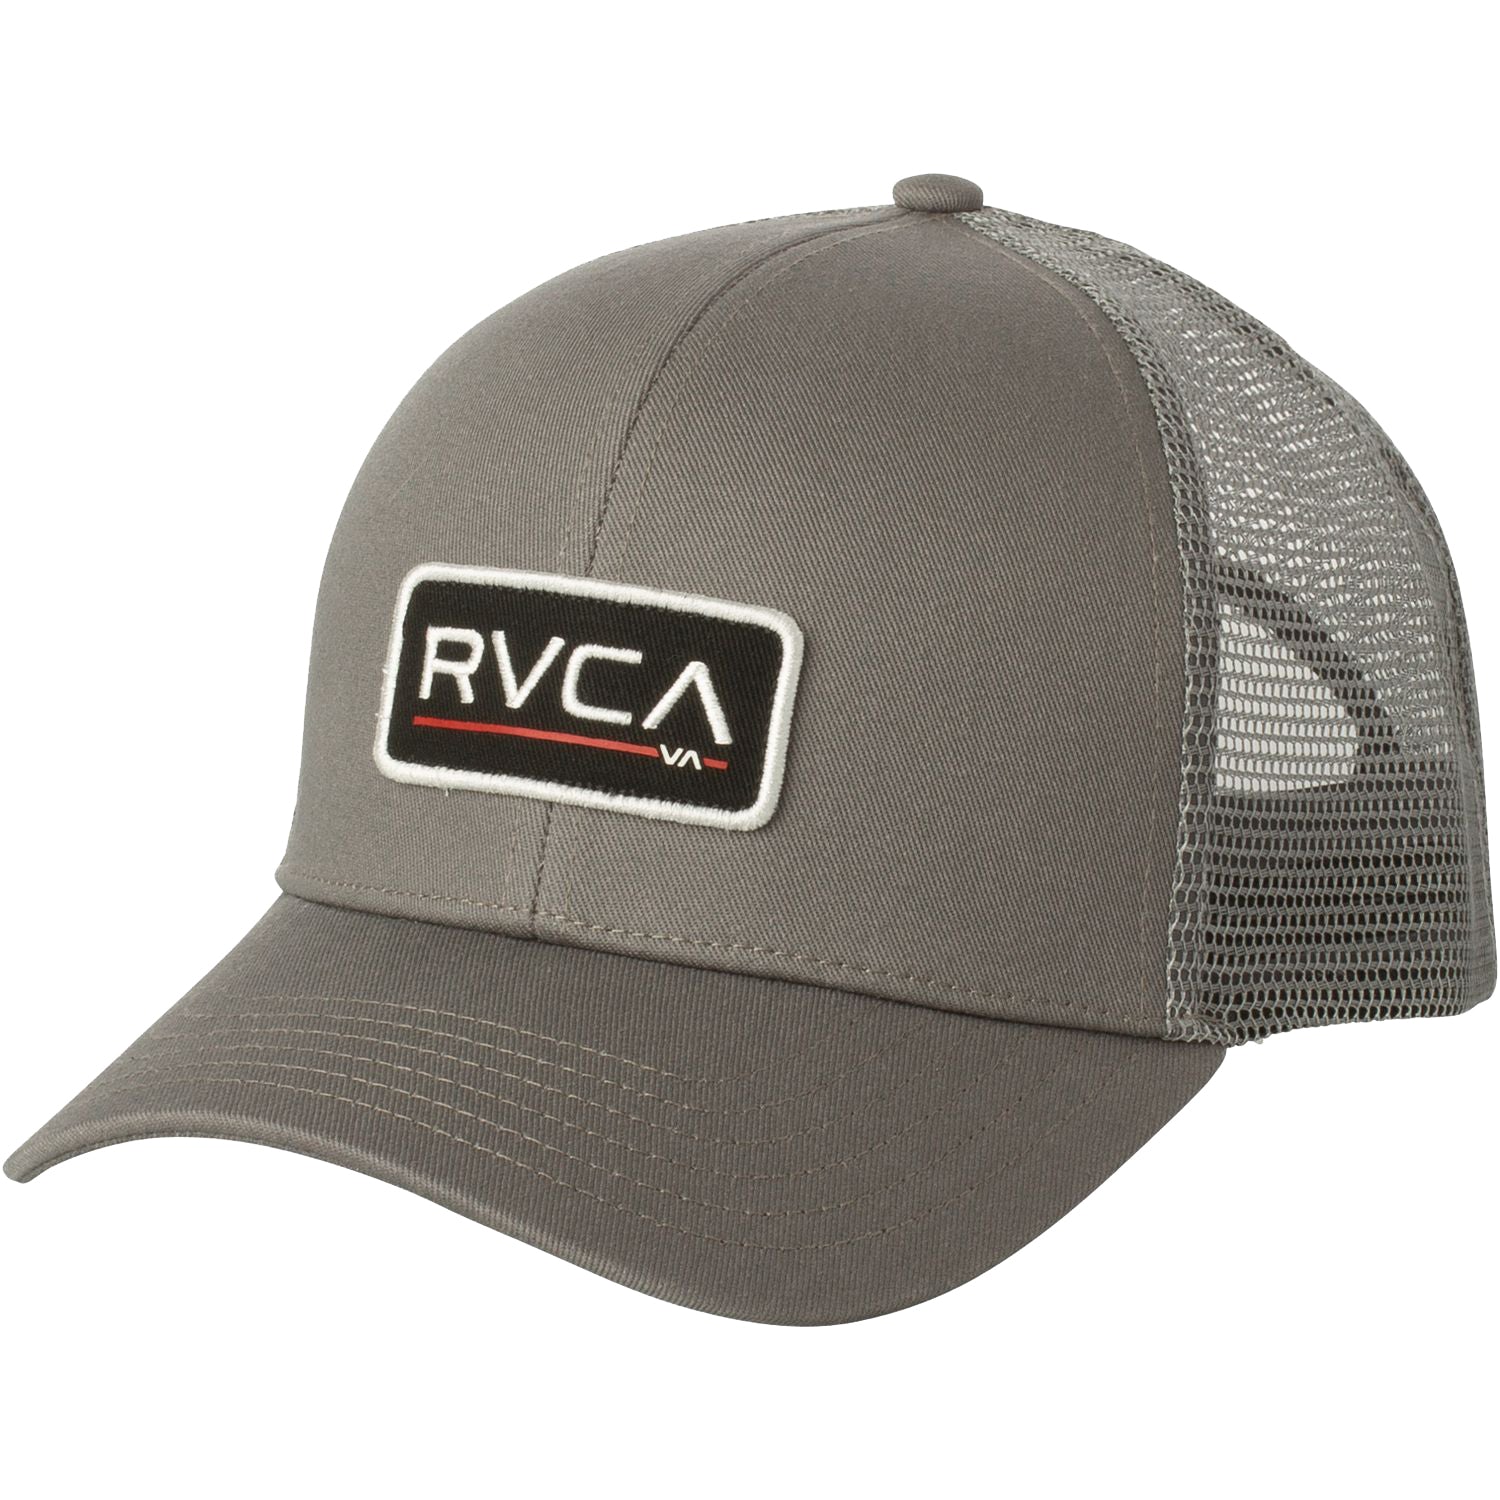 RVCA Ticket Trucker Hat GRY-Grey OS